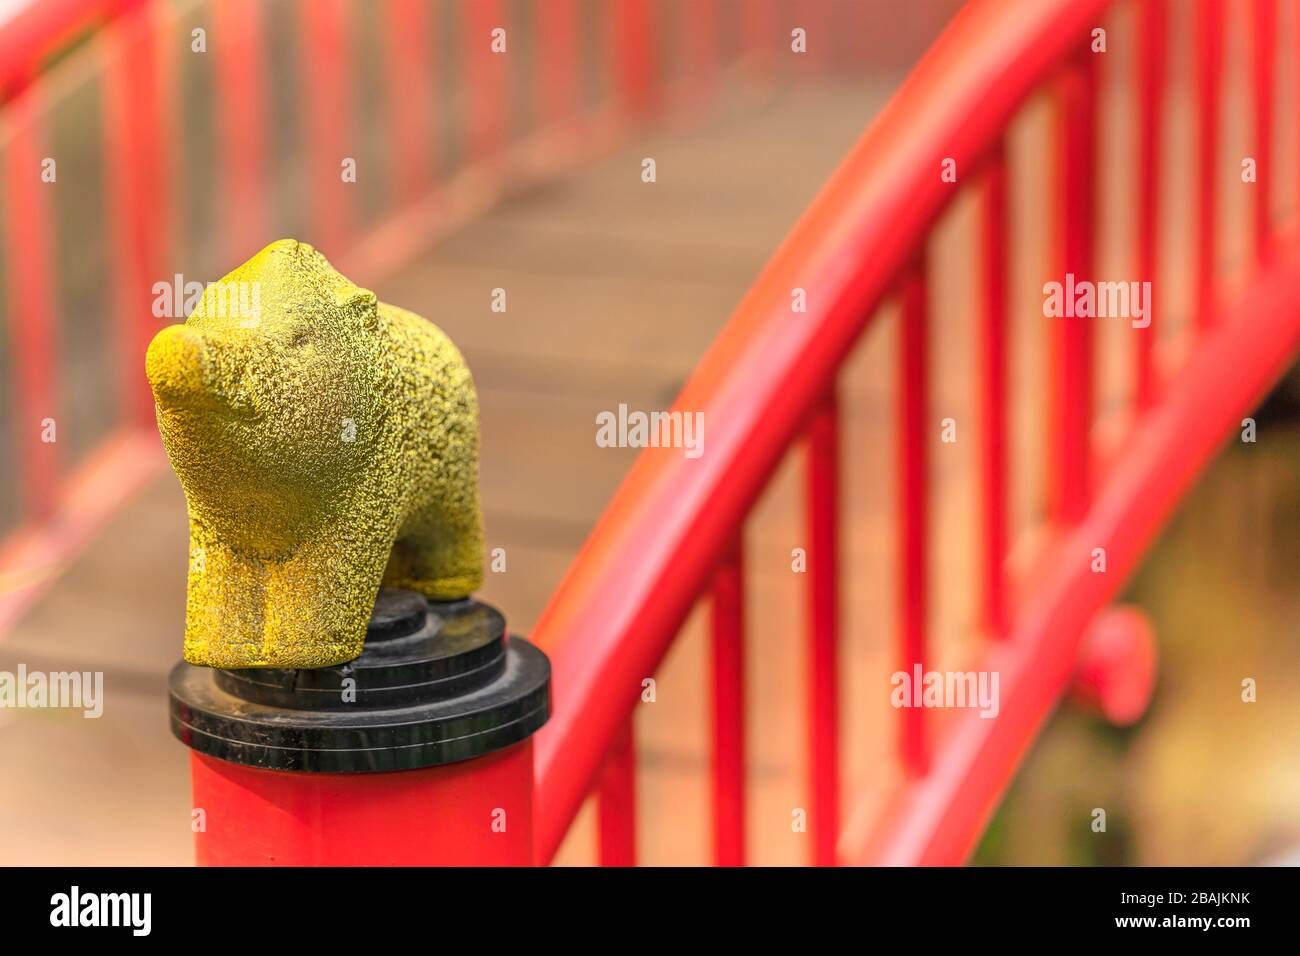 tokyo, giappone - 02 marzo 2020: Un cinghiale dorato adornato sulla balaustra del ponte di Taikobashi sopra lo stagno di Shinji-in al tempio di Shinjo-in situato in Foto Stock